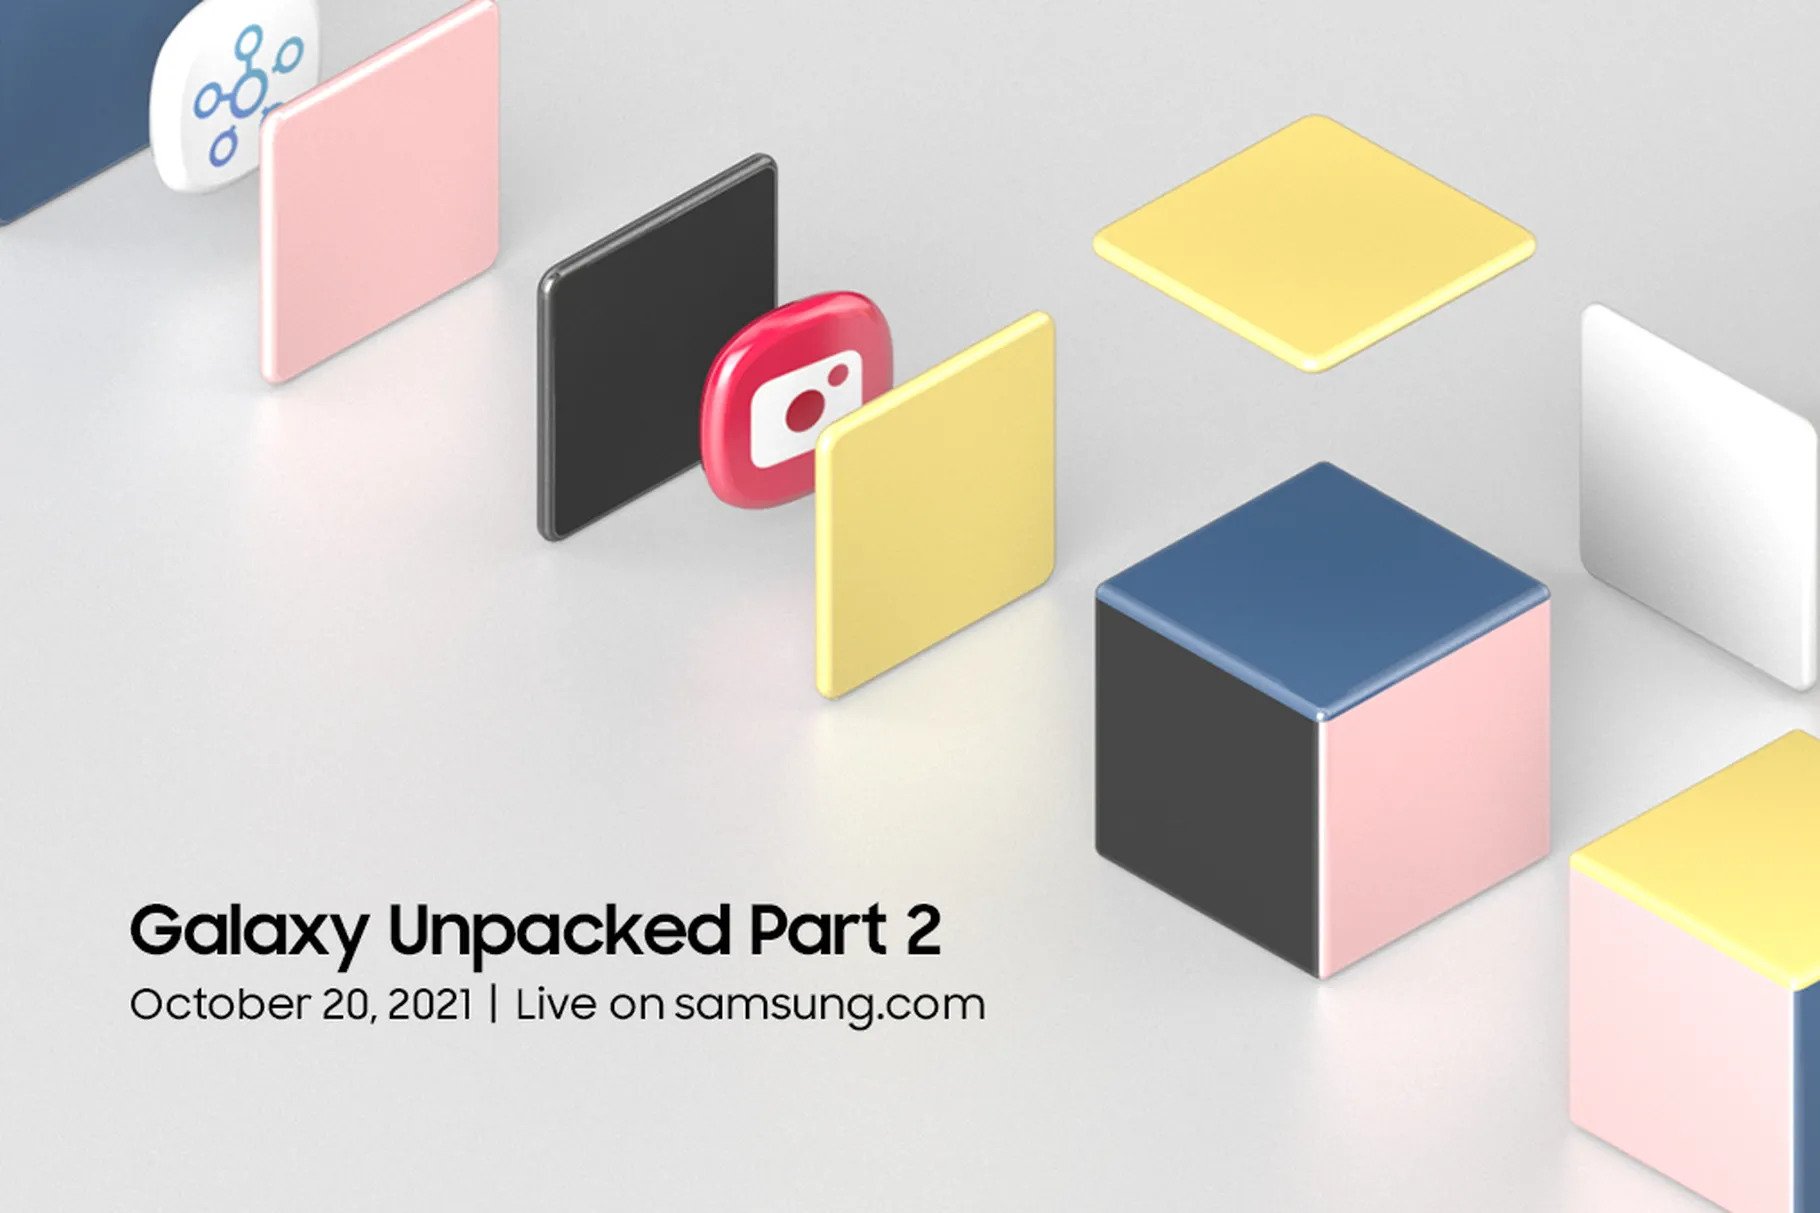 Samsung annonce le Galaxy Unpacked Part 2, qui aura lieu le 20 octobre